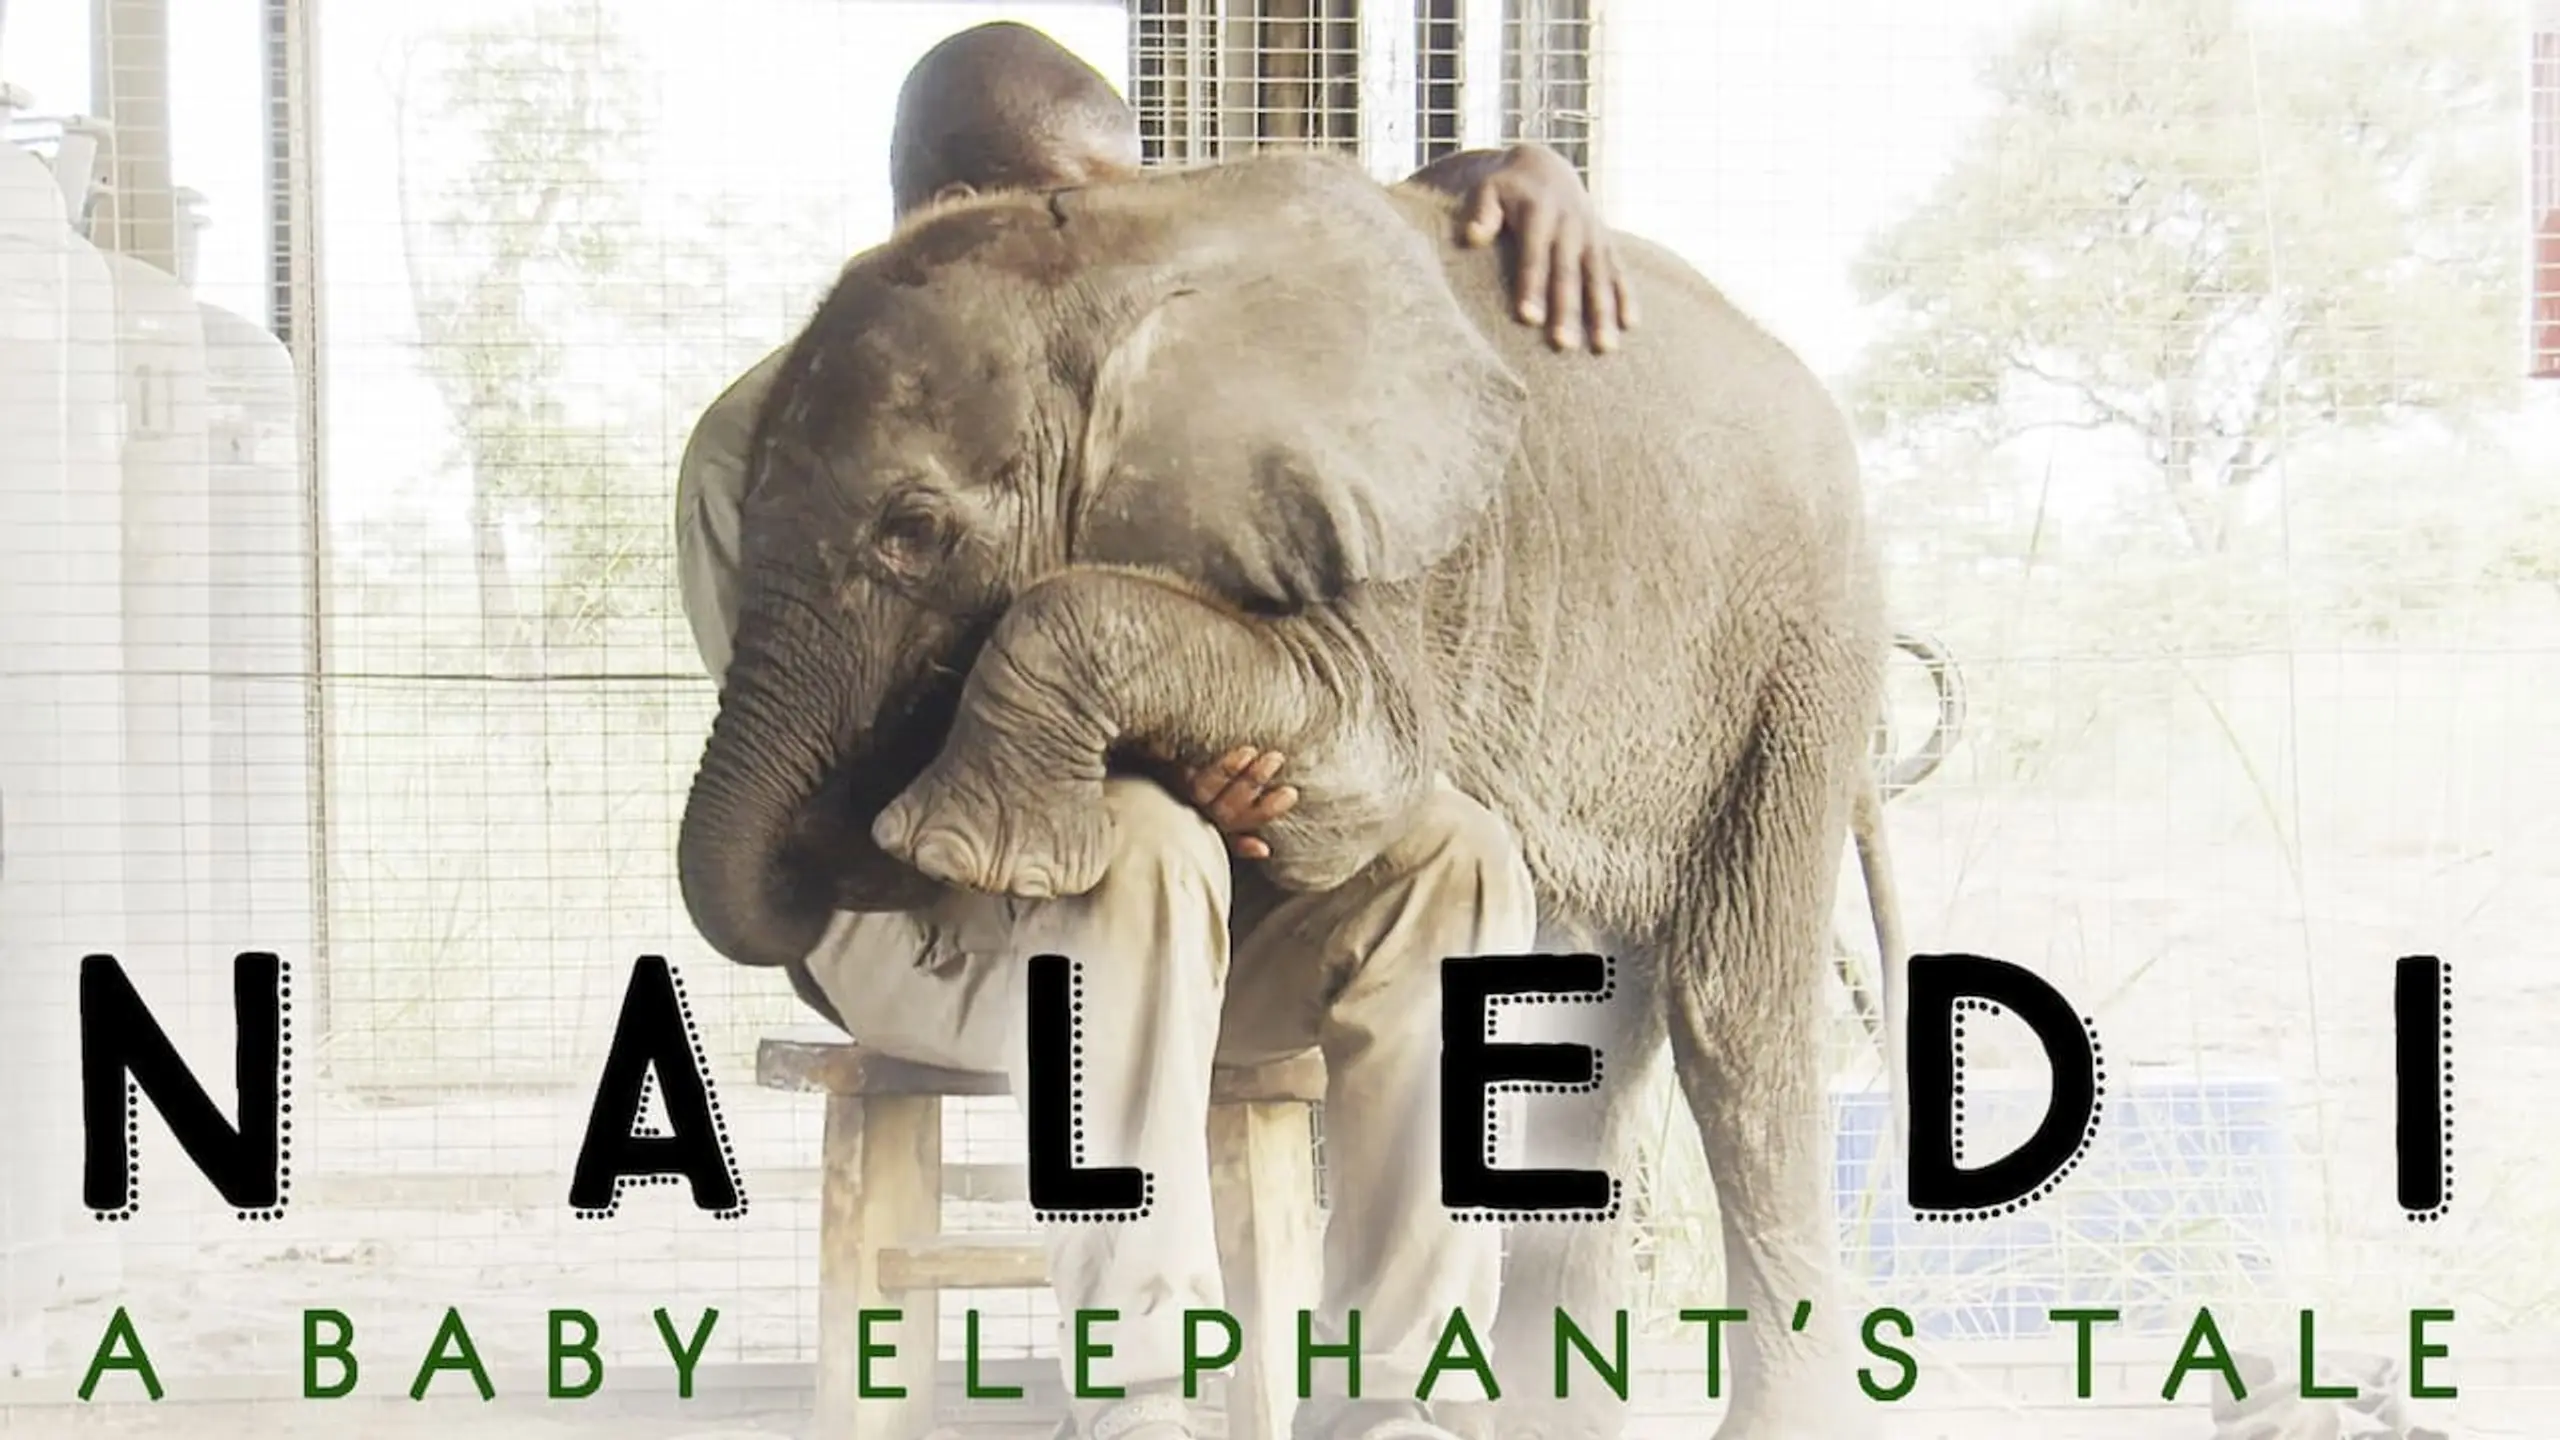 Naledi - Ein Elefantenleben